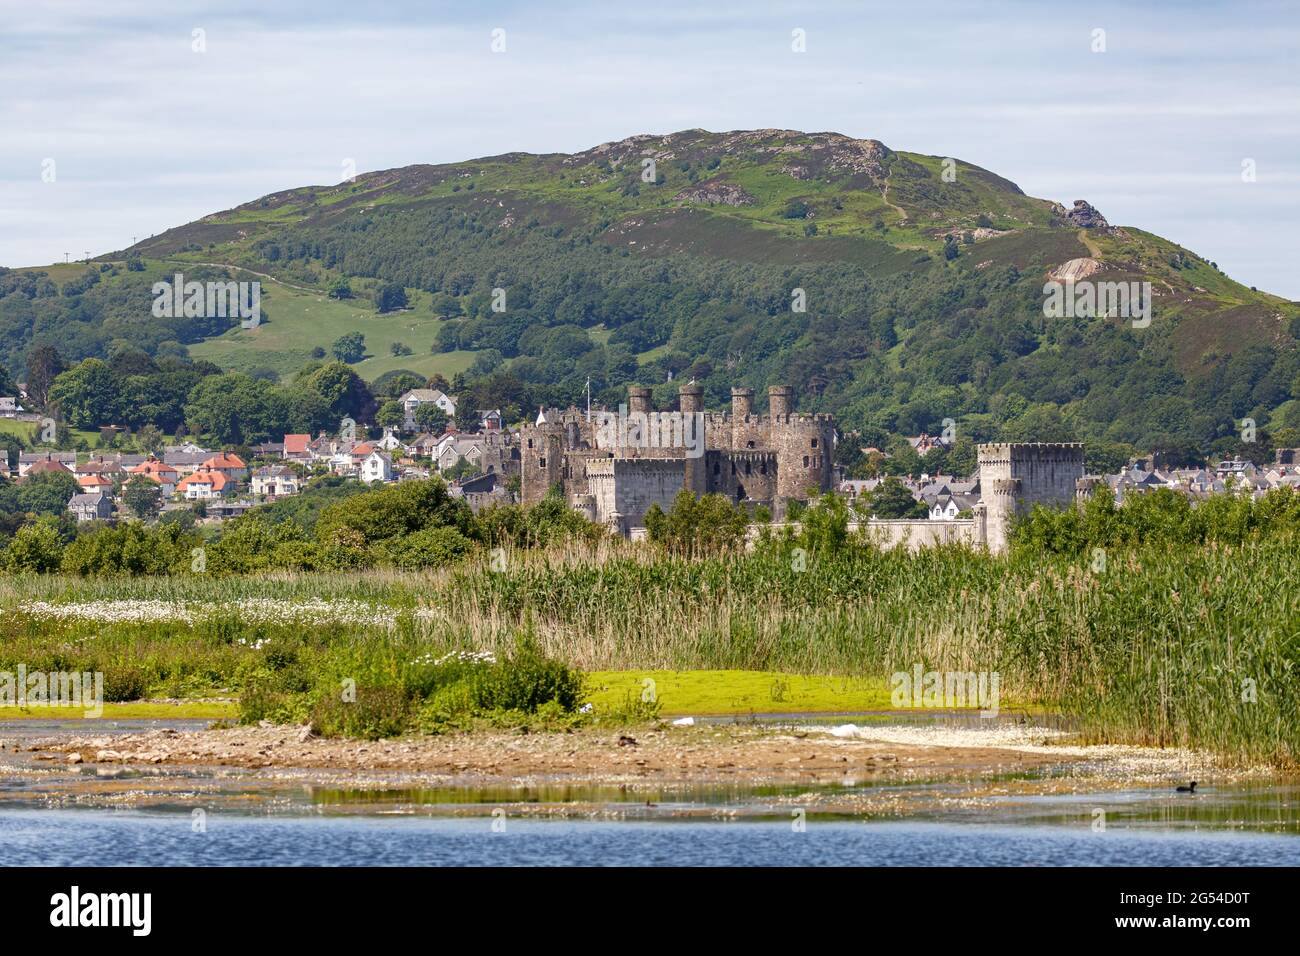 Blick über den Fluss Conwy auf Conwy Castle mit dem Metallbahntunnel, der in der Szene sichtbar ist. Stockfoto